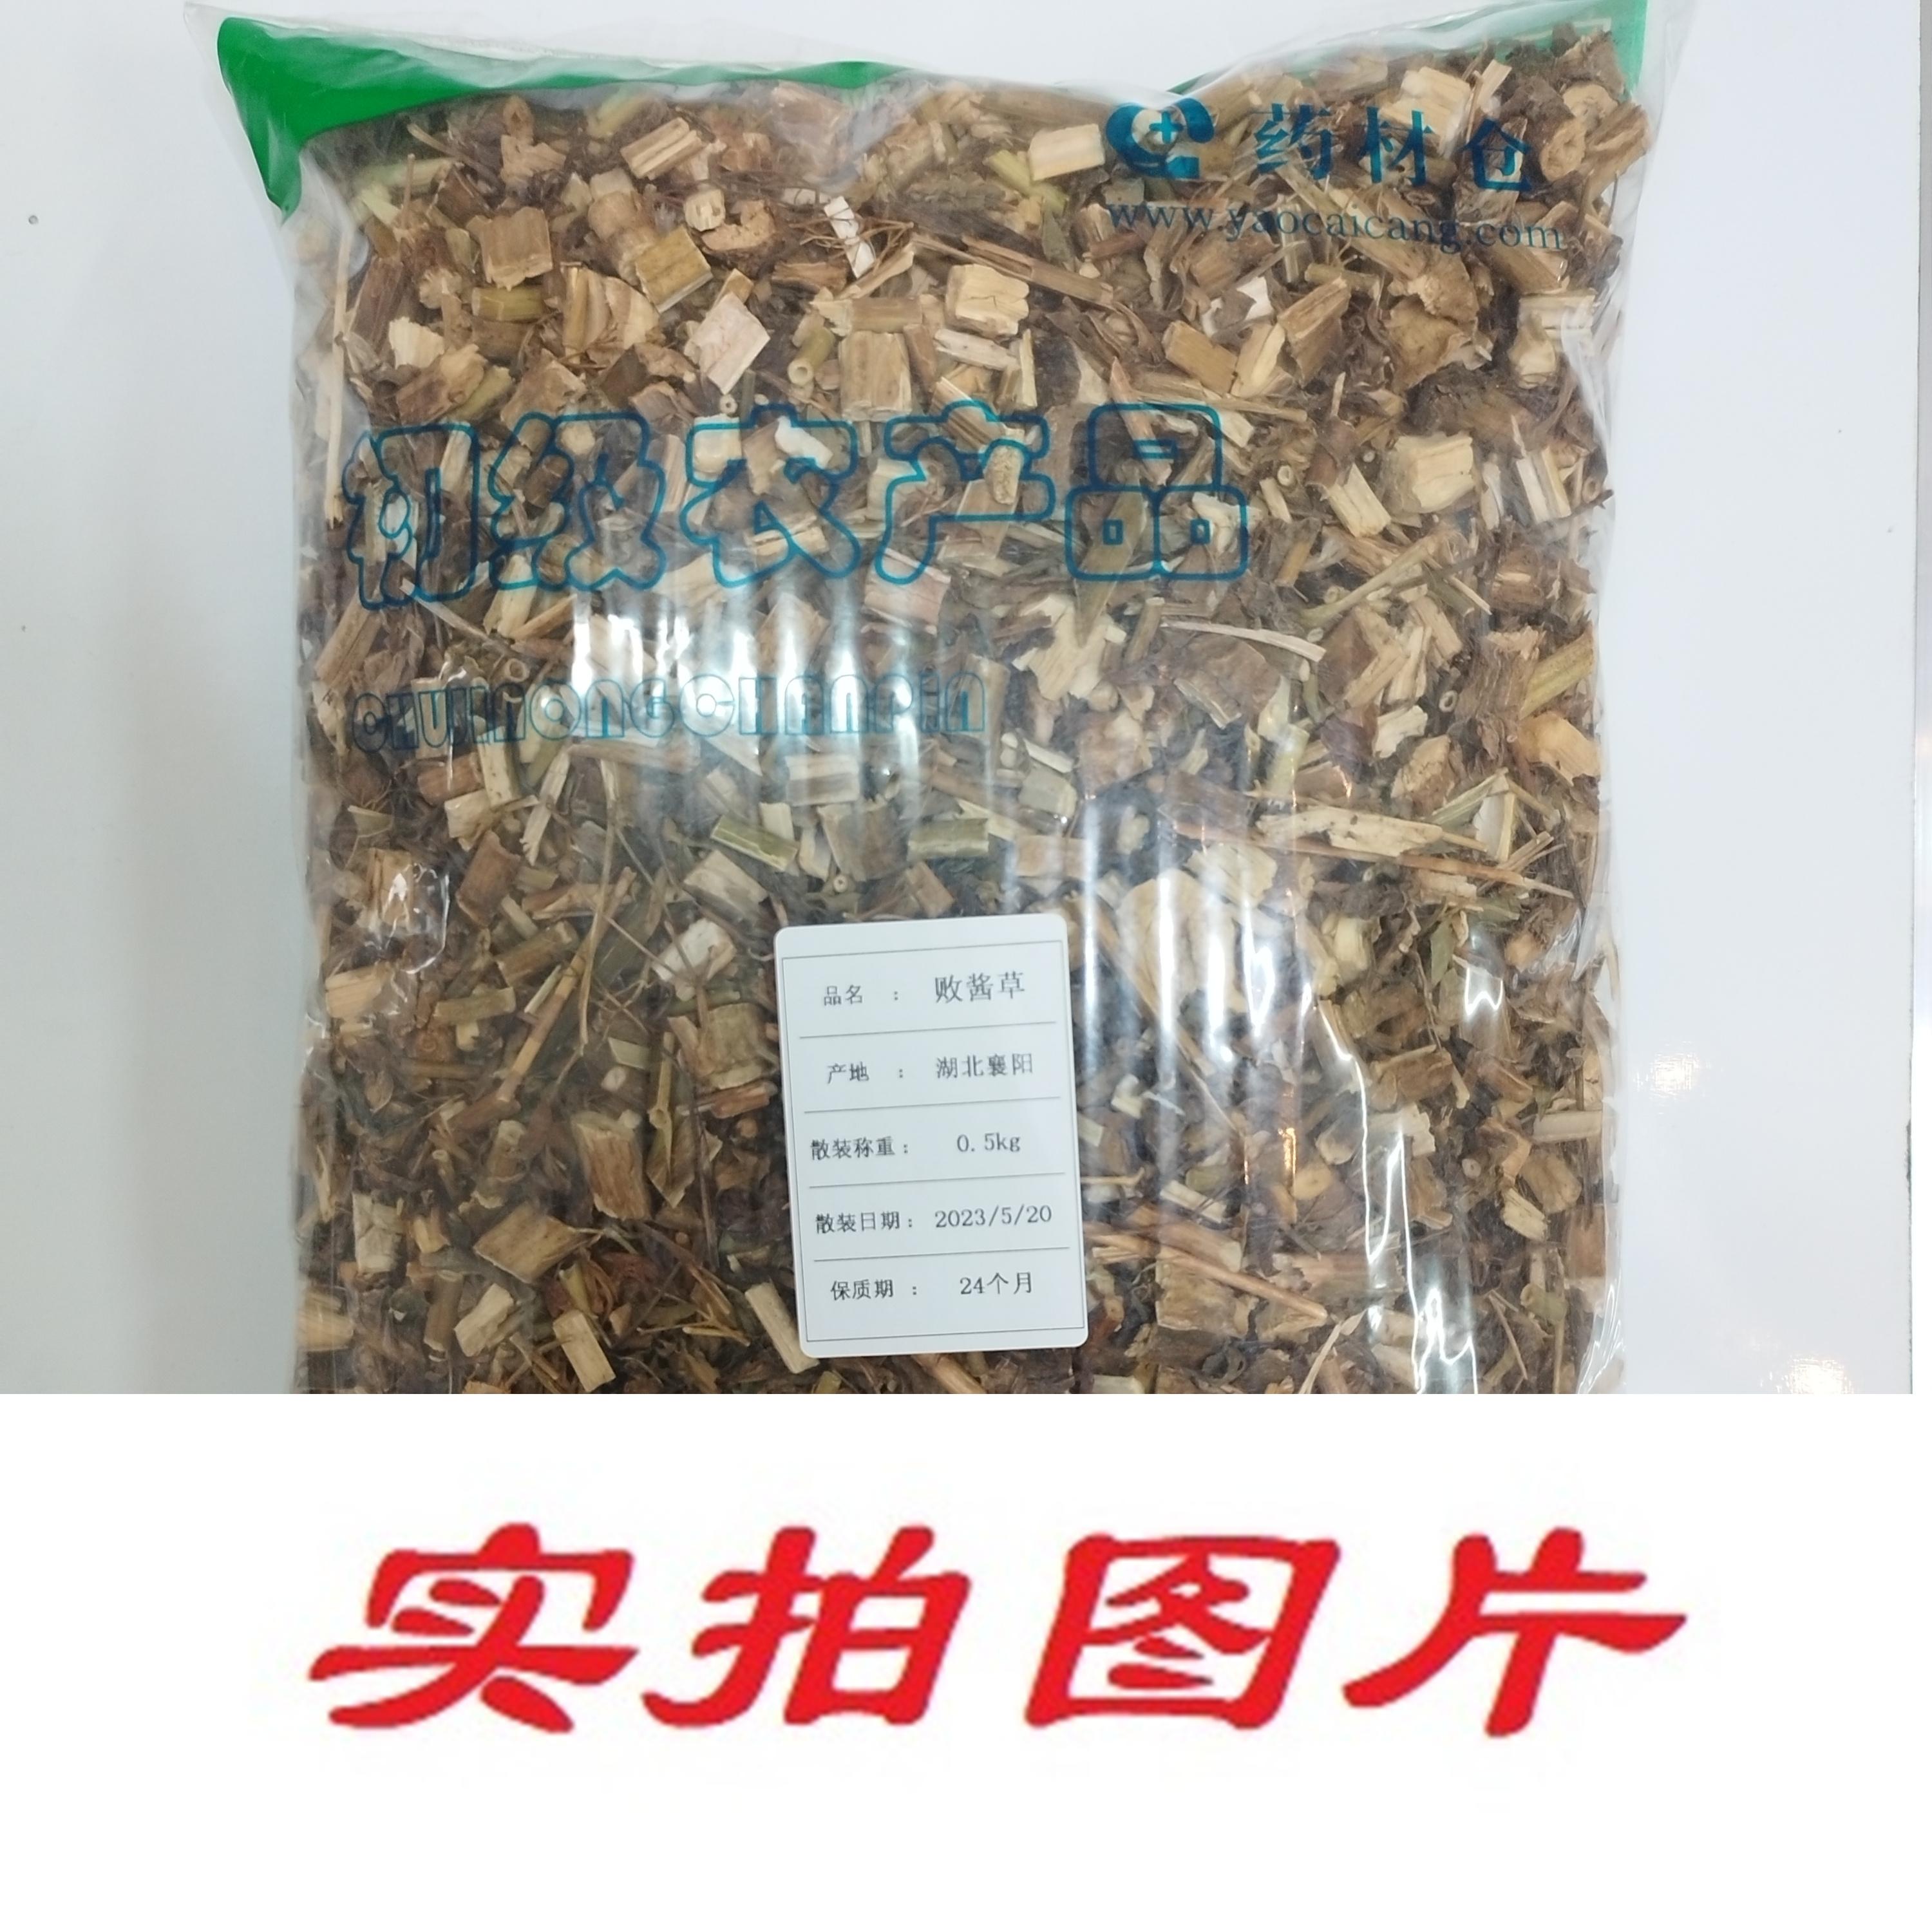 【】败酱草0.5kg-农副产品